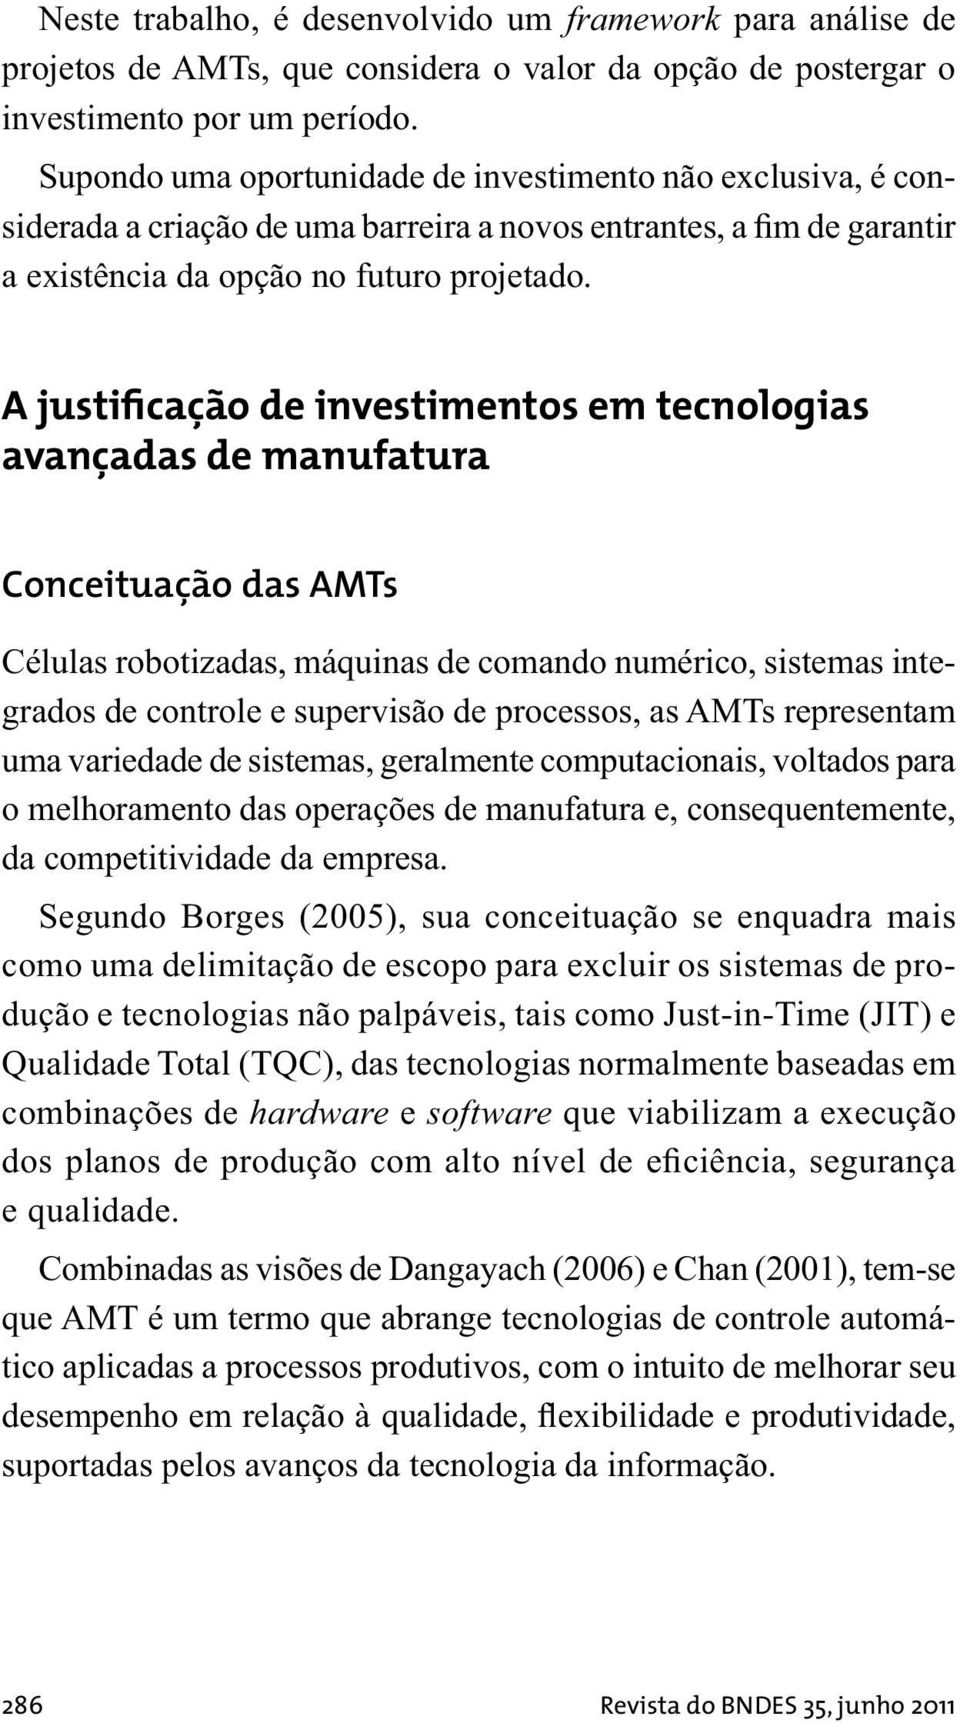 A justificação de investimentos em tecnologias avançadas de manufatura Conceituação das AMTs Células robotizadas, máquinas de comando numérico, sistemas integrados de controle e supervisão de